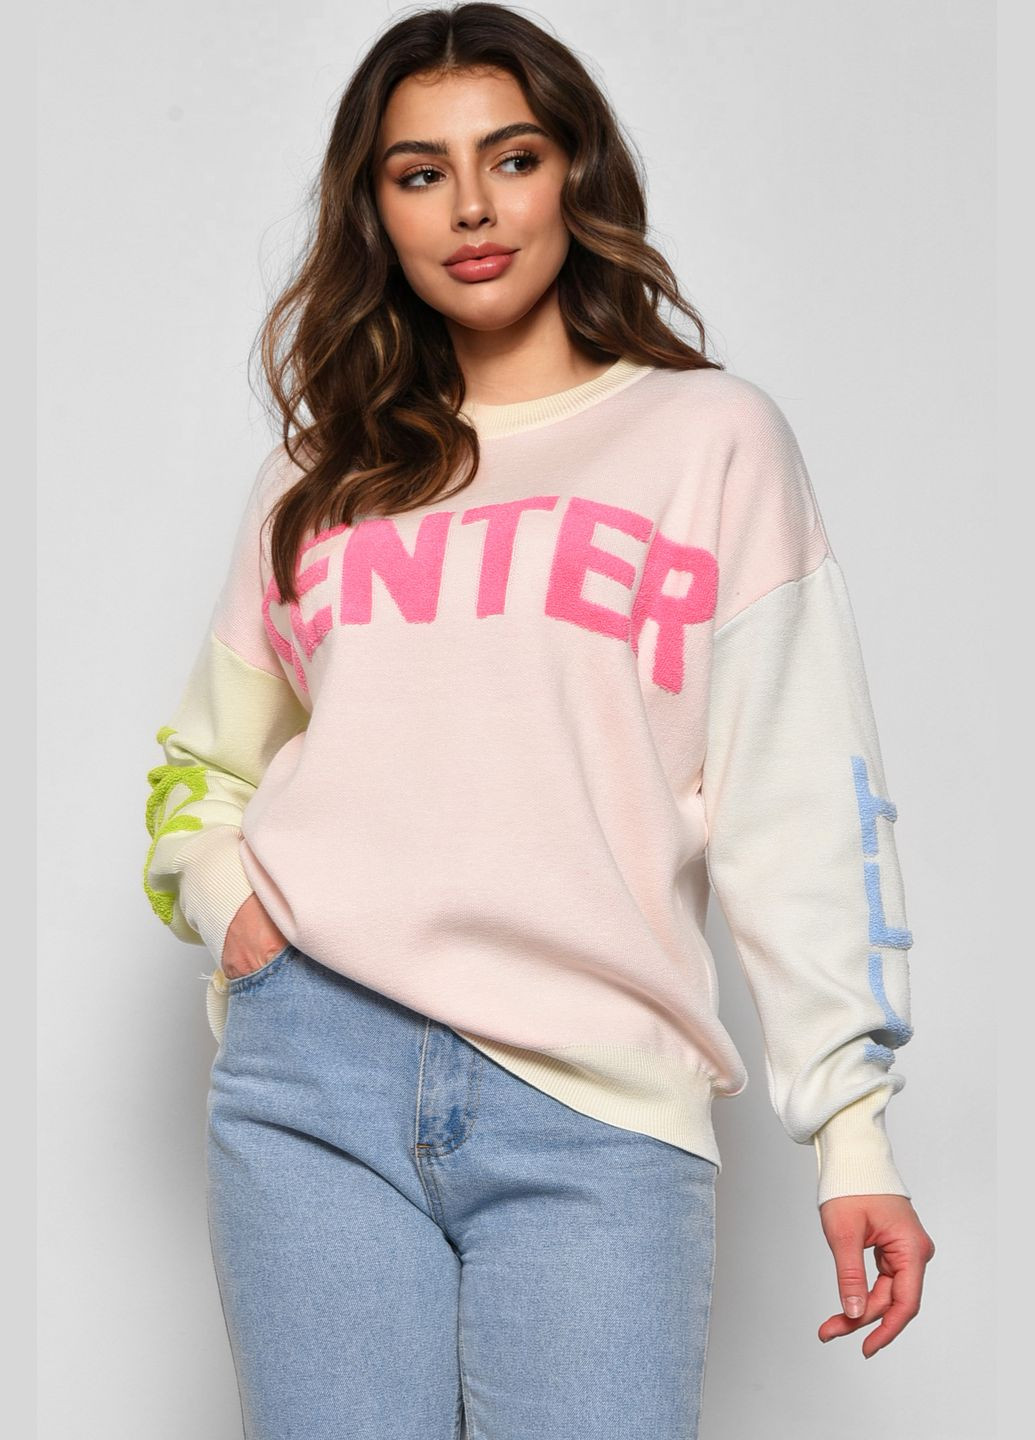 Молочный зимний свитер женский полубатальный молочного цвета пуловер Let's Shop